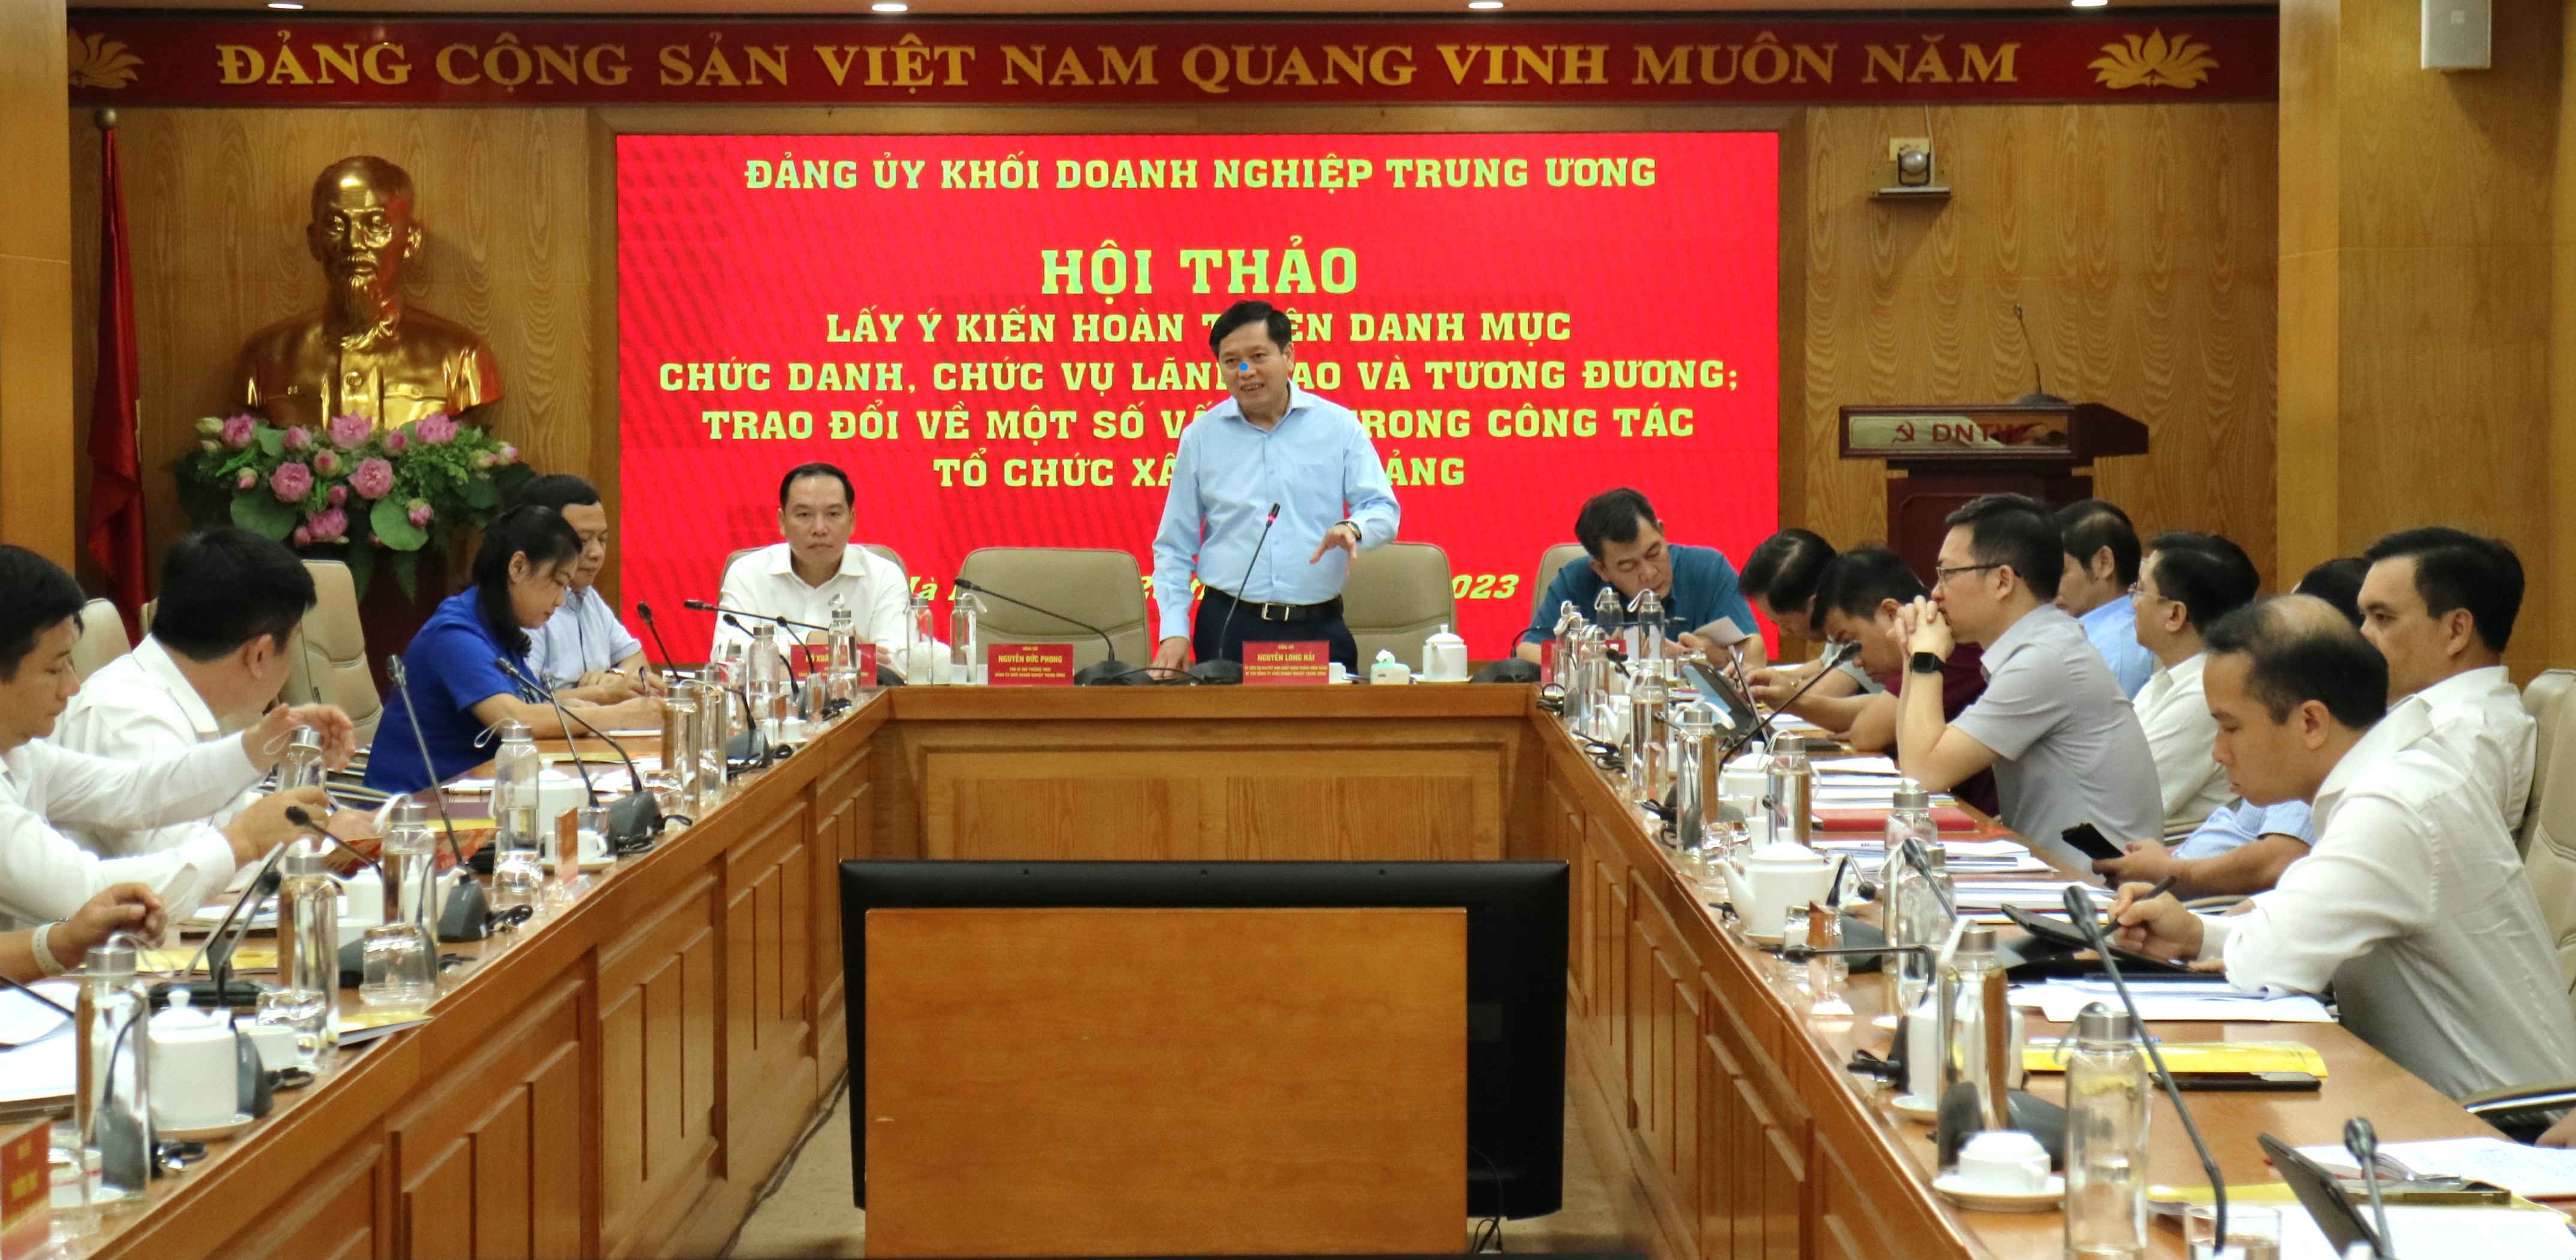 Đồng chí Nguyễn Long Hải, Ủy viên dự khuyết Trung ương Đảng, Bí thư Đảng ủy Khối phát biểu tại Hội thảo.